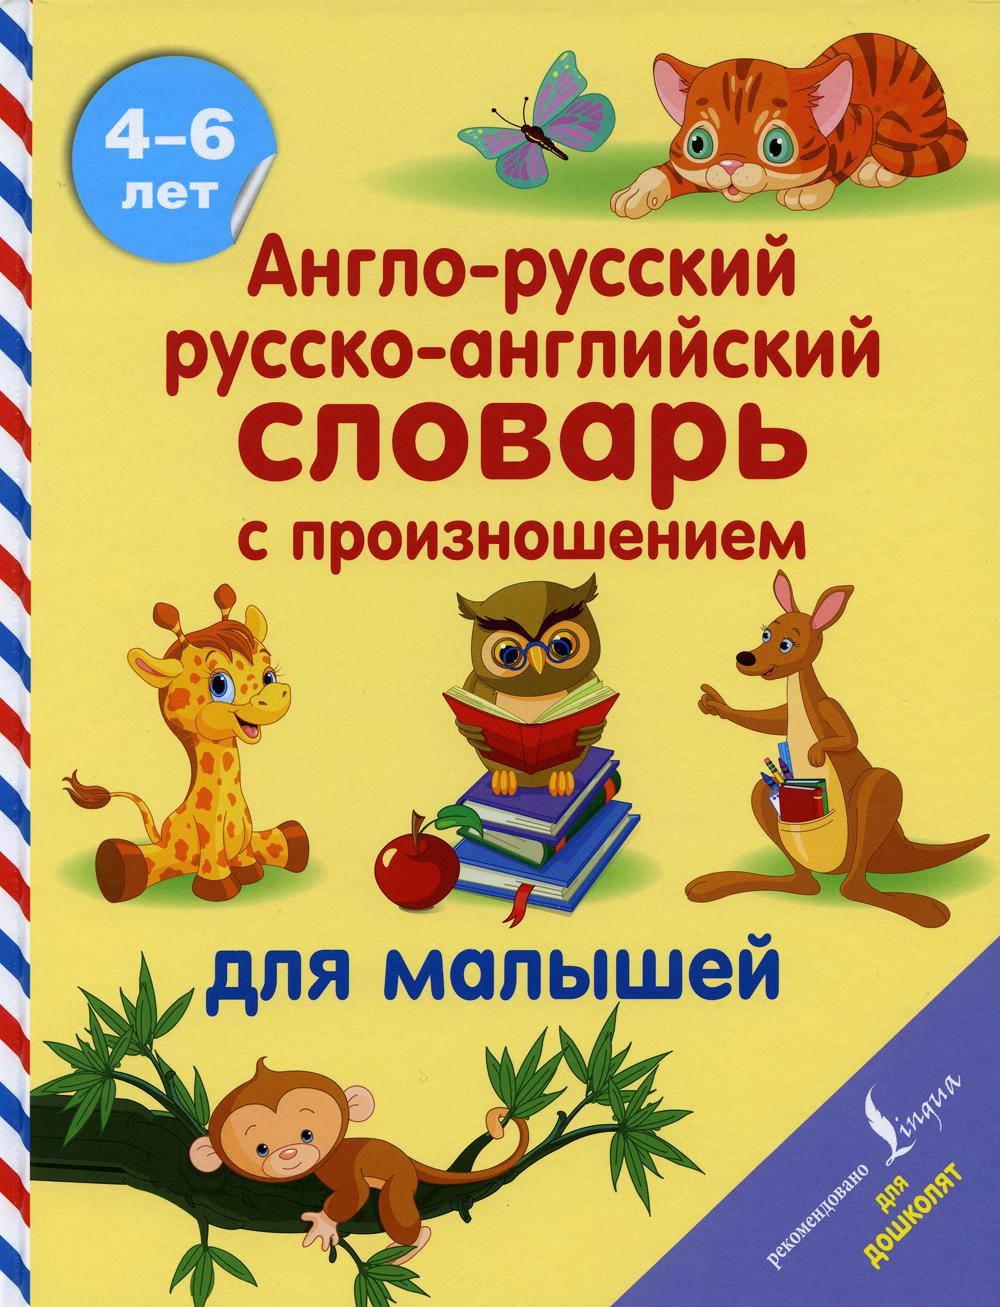 Англо-русский русско-английский словарь с произношением для малышей